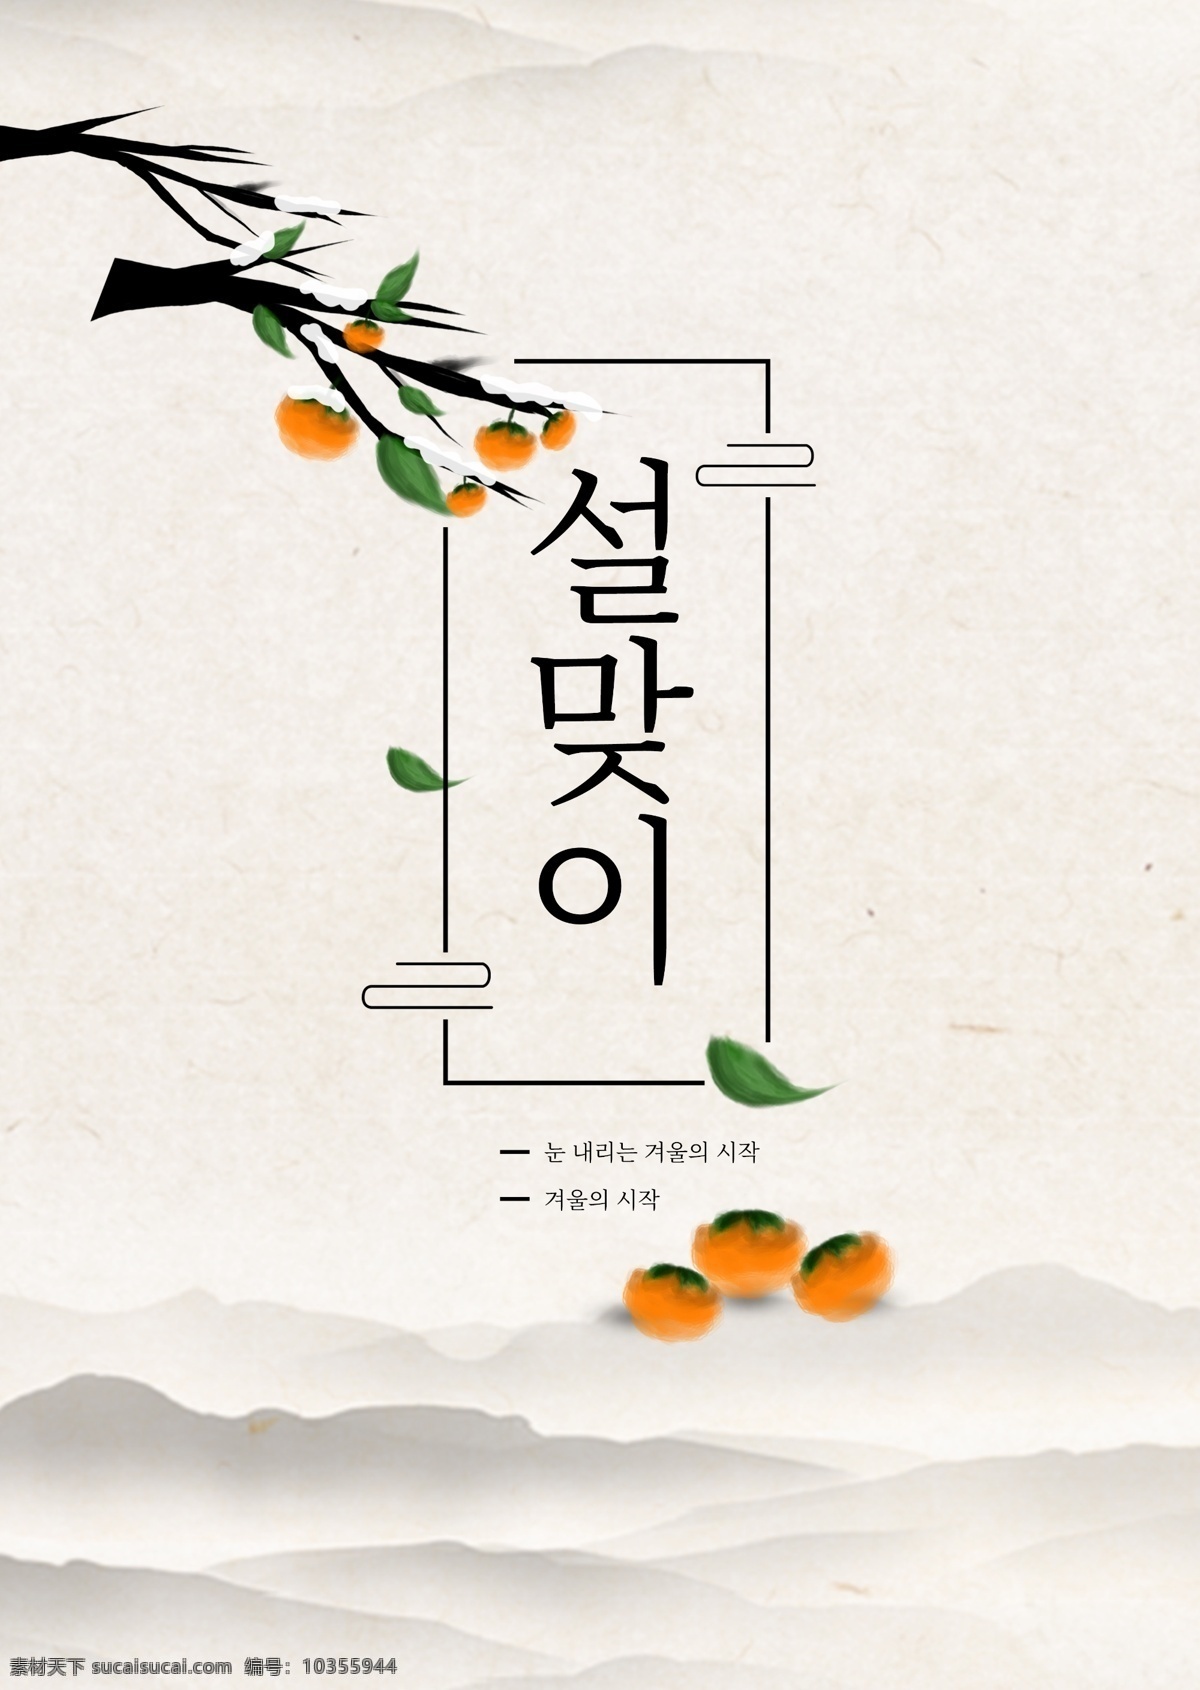 灰色 简单 春天 海报 弹簧 水果 数字 分支机构 橙子 黑色 白色 朝鲜的 山